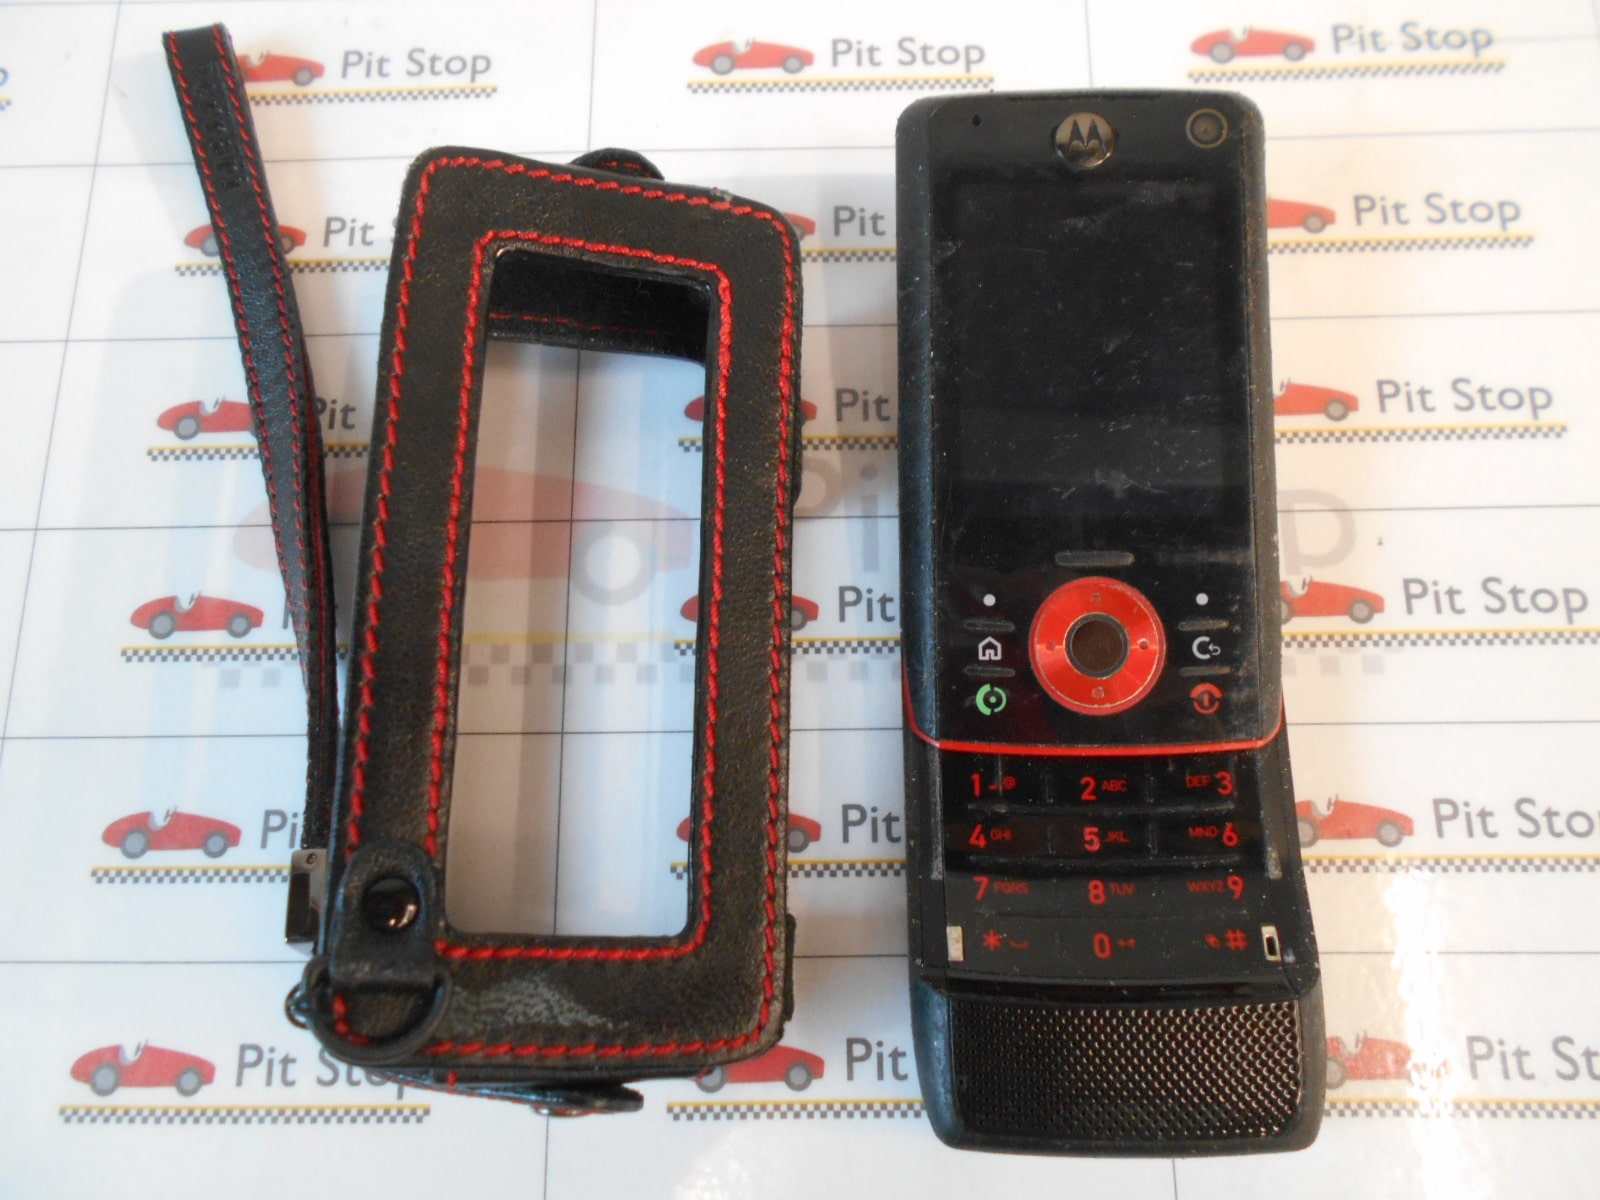 Ferrari cellulare Motorola RIZR Z8 con alcune imperfezioni